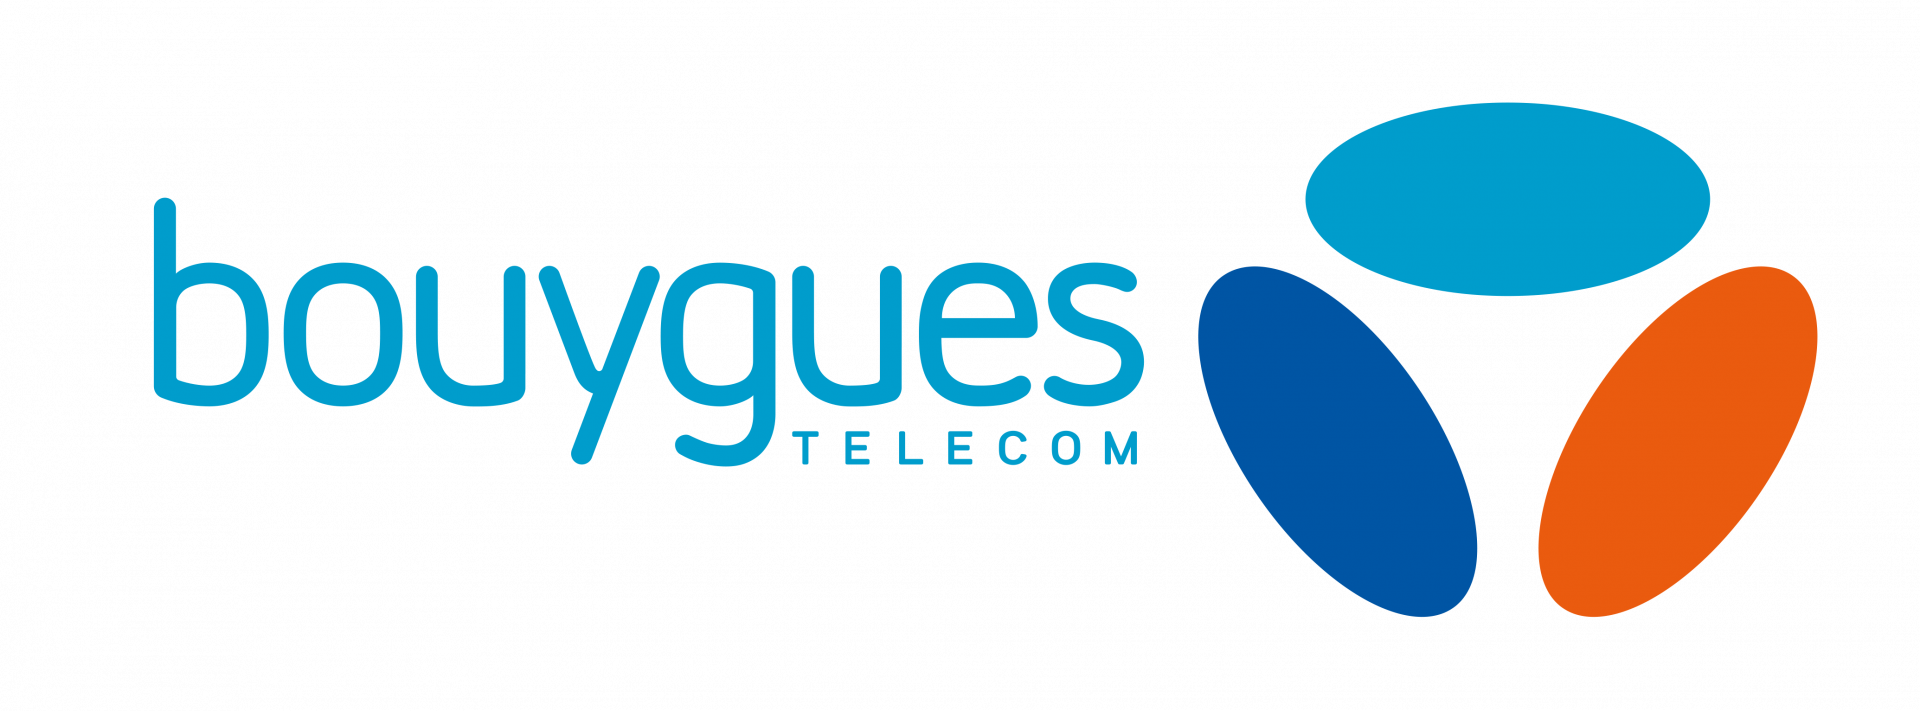 Bouygues_Télécom_logo